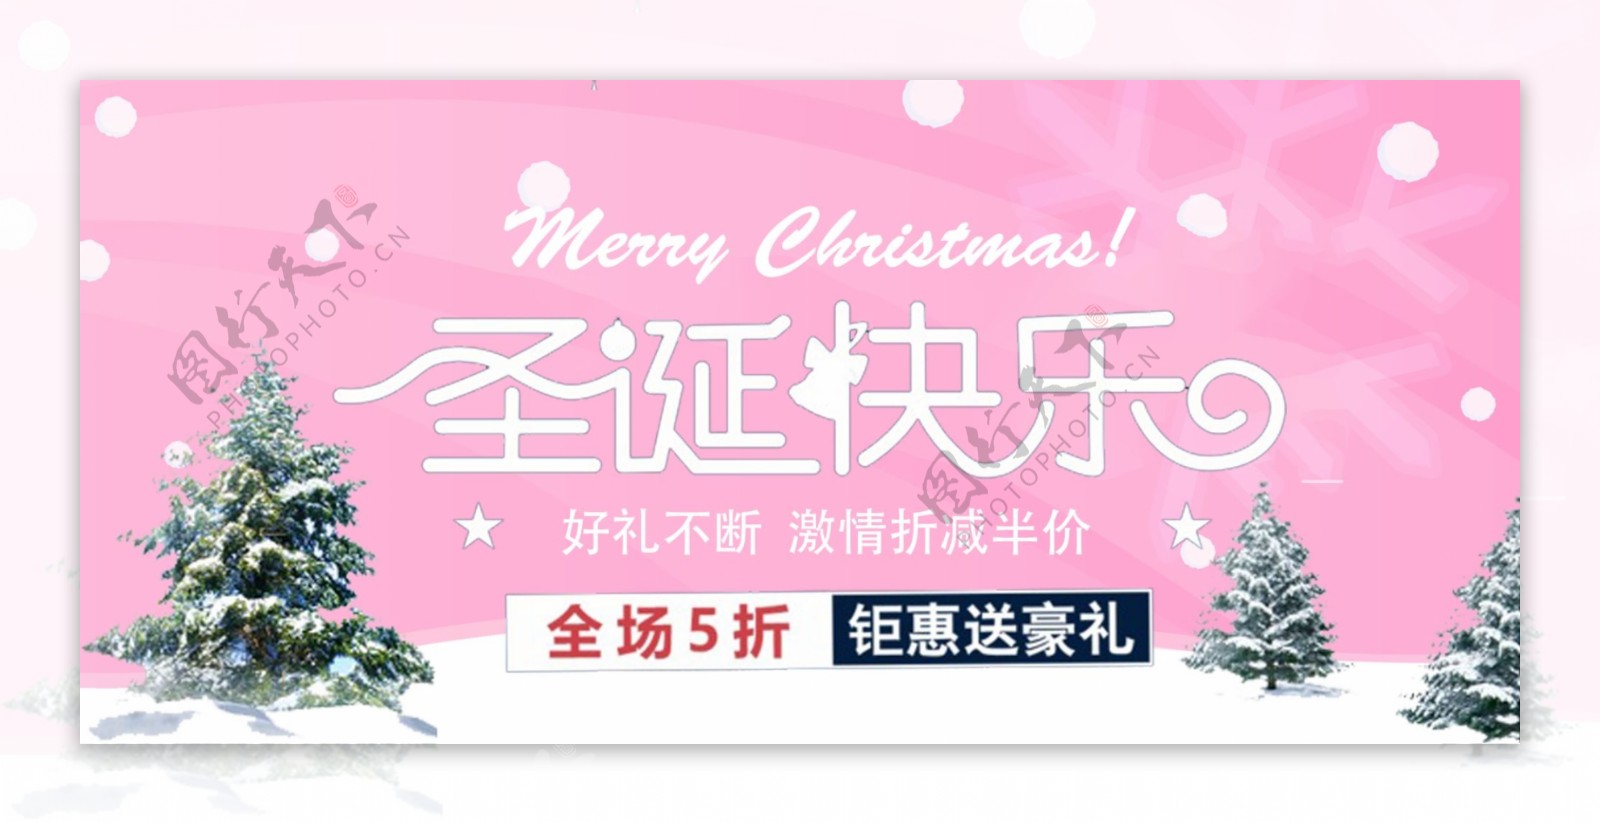 电商淘宝圣诞节促销活动海报